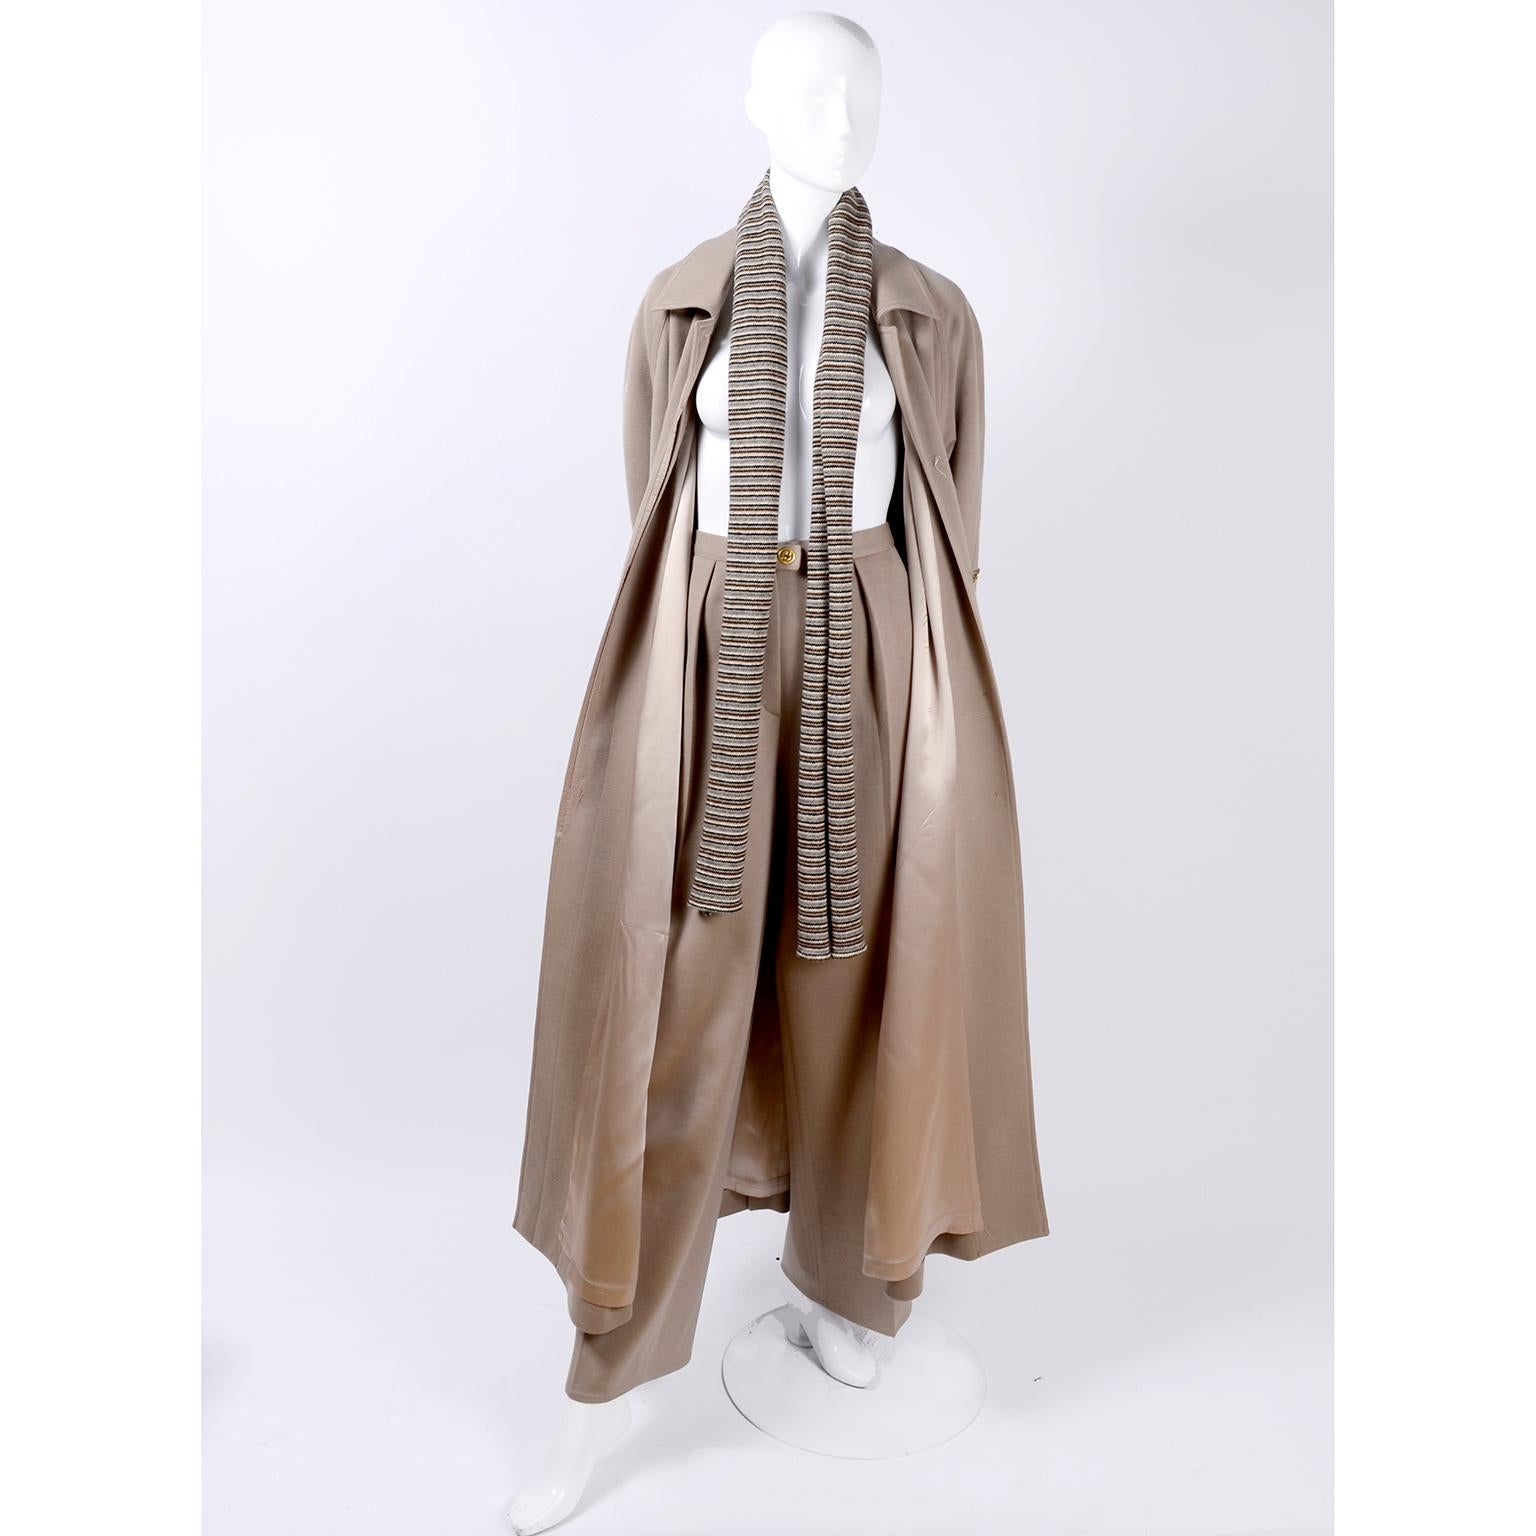 Voici un magnifique ensemble 3 pièces en laine de Sonia Rykiel, Paris. C'est une belle tenue polyvalente  qui comprend un pantalon taille haute, un magnifique manteau long doublé et ceinturé, et une écharpe rayée. Ce tailleur-pantalon vintage